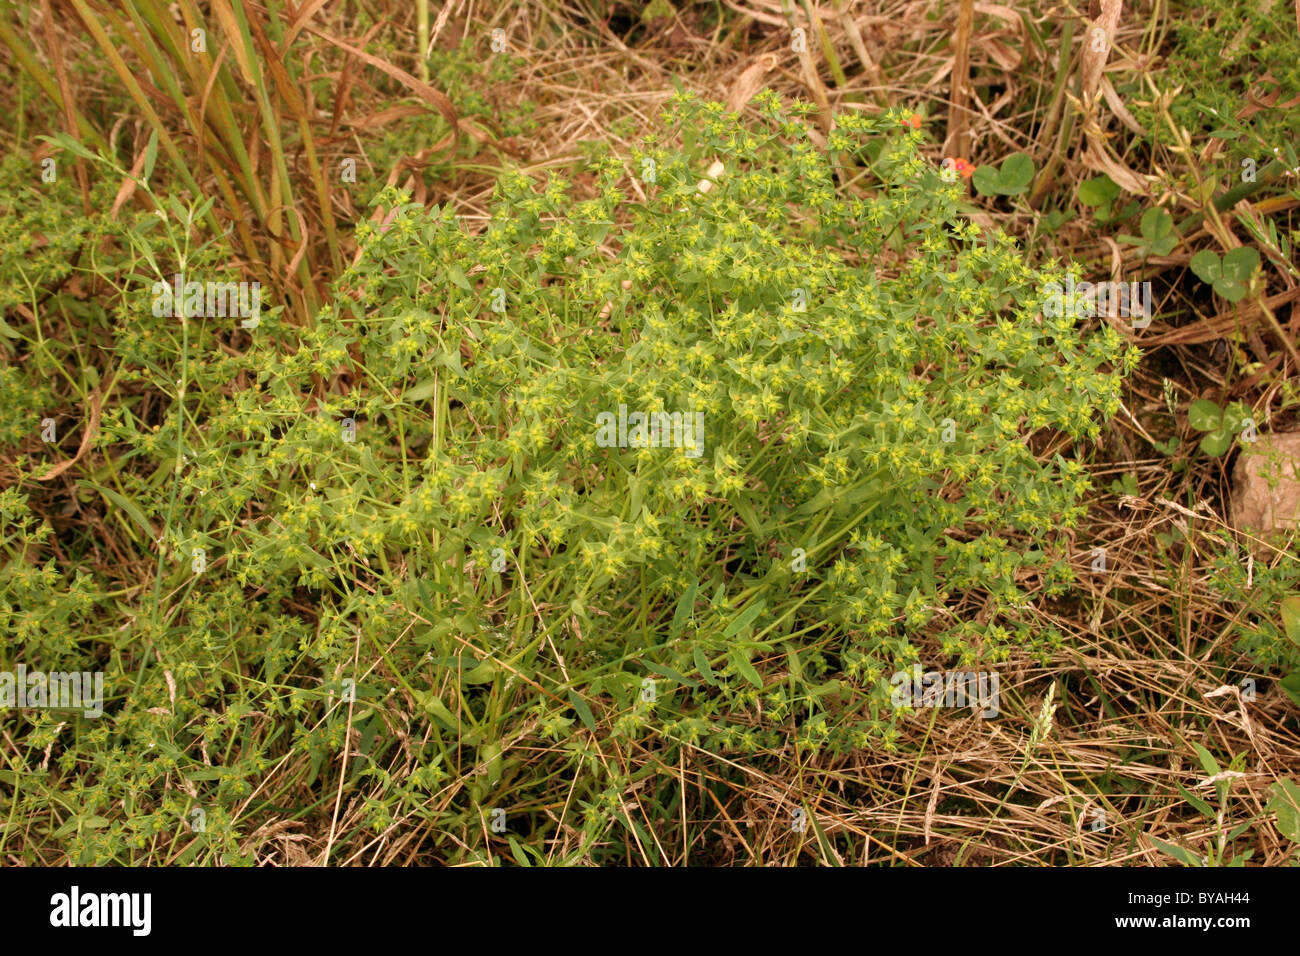 Dwarf spurge (Euphorbia exigua : Euphorbiaceae) in a cornfield, UK. Stock Photo